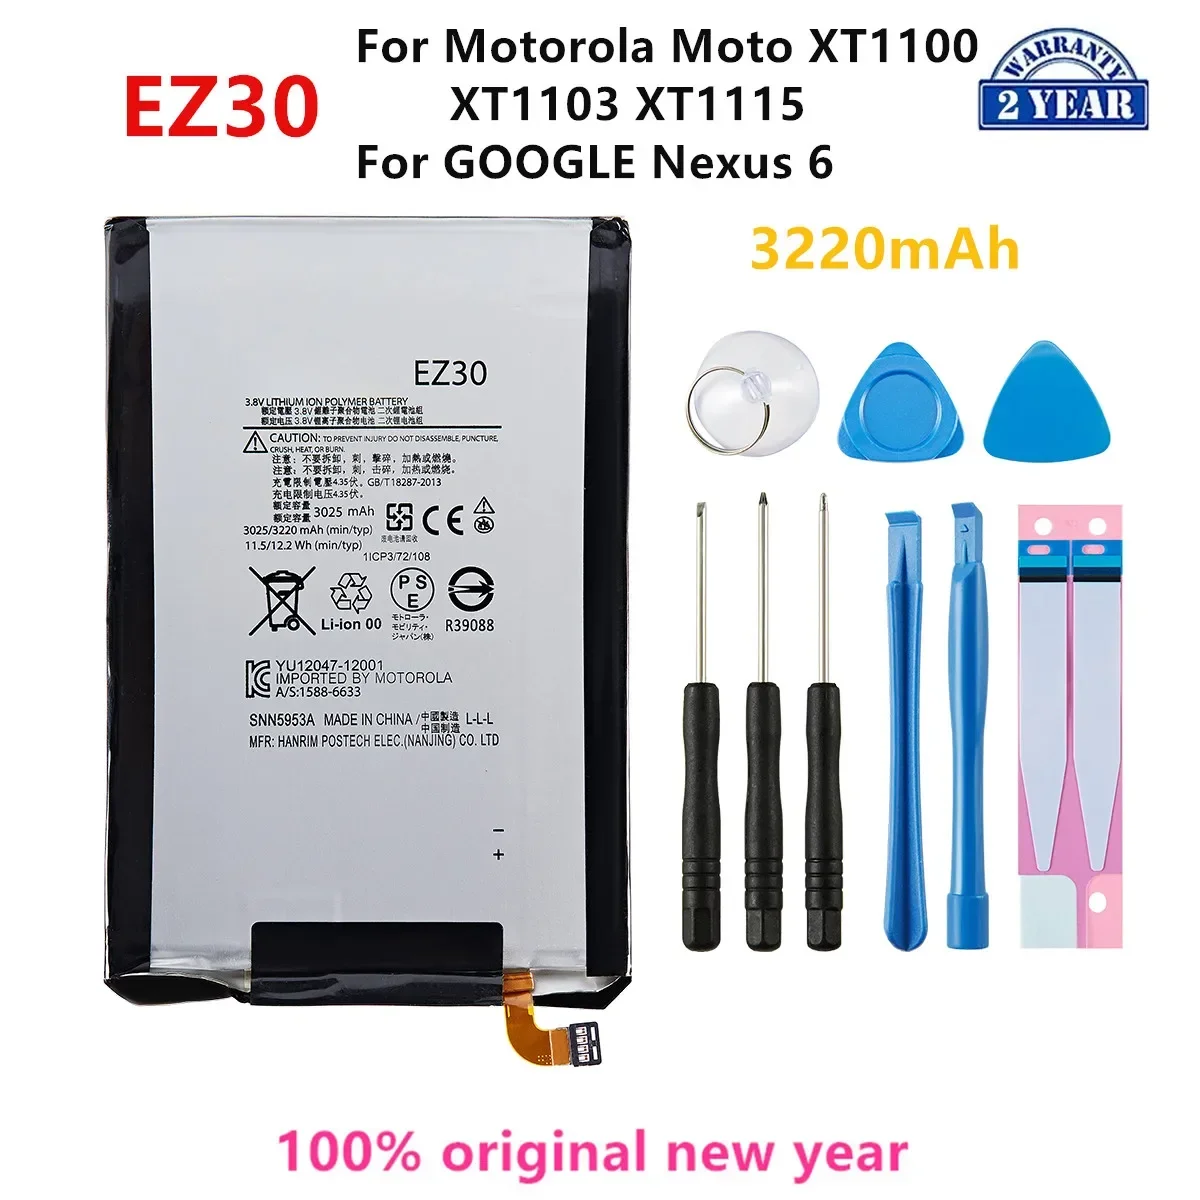 

100% Оригинальный аккумулятор EZ30 3220 мАч для Motorola Moto XT1100 XT1103 XT1115/GOOGLE Nexus 6 Мобильный телефон батареи + Инструменты